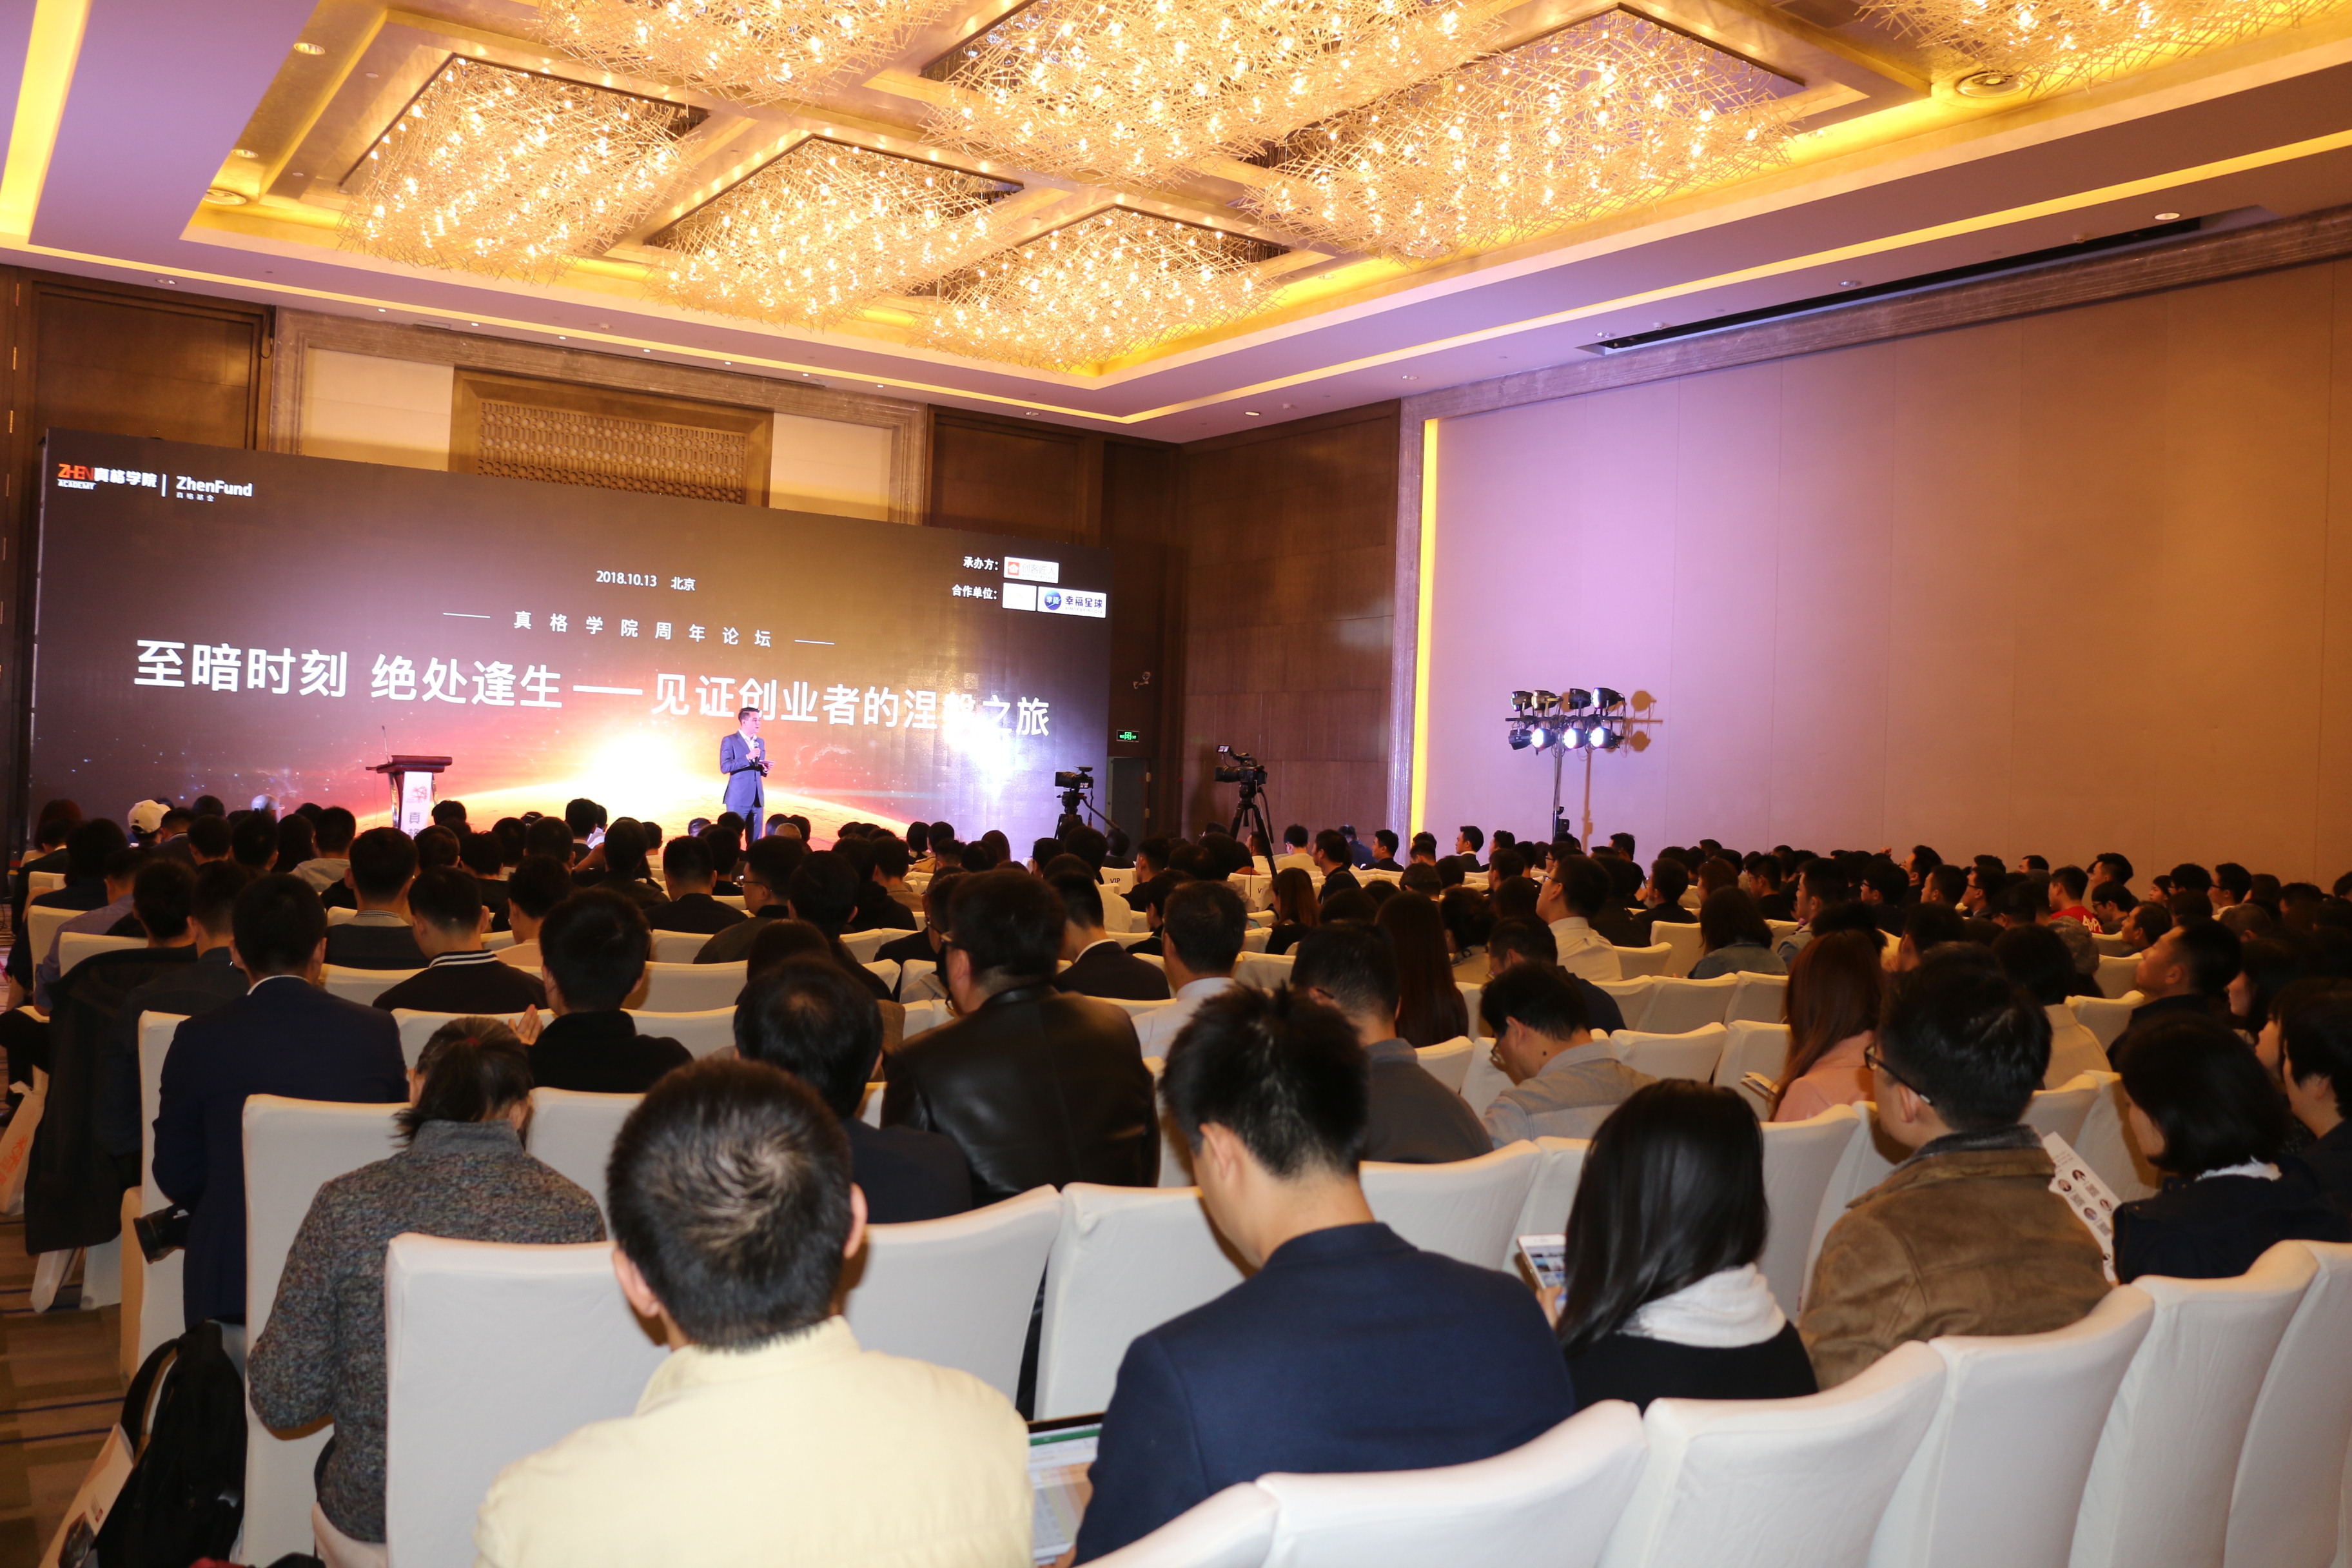 真格学院一周年庆祝活动在北京举行  创客匠人创始人蒋洪波受邀出席会议